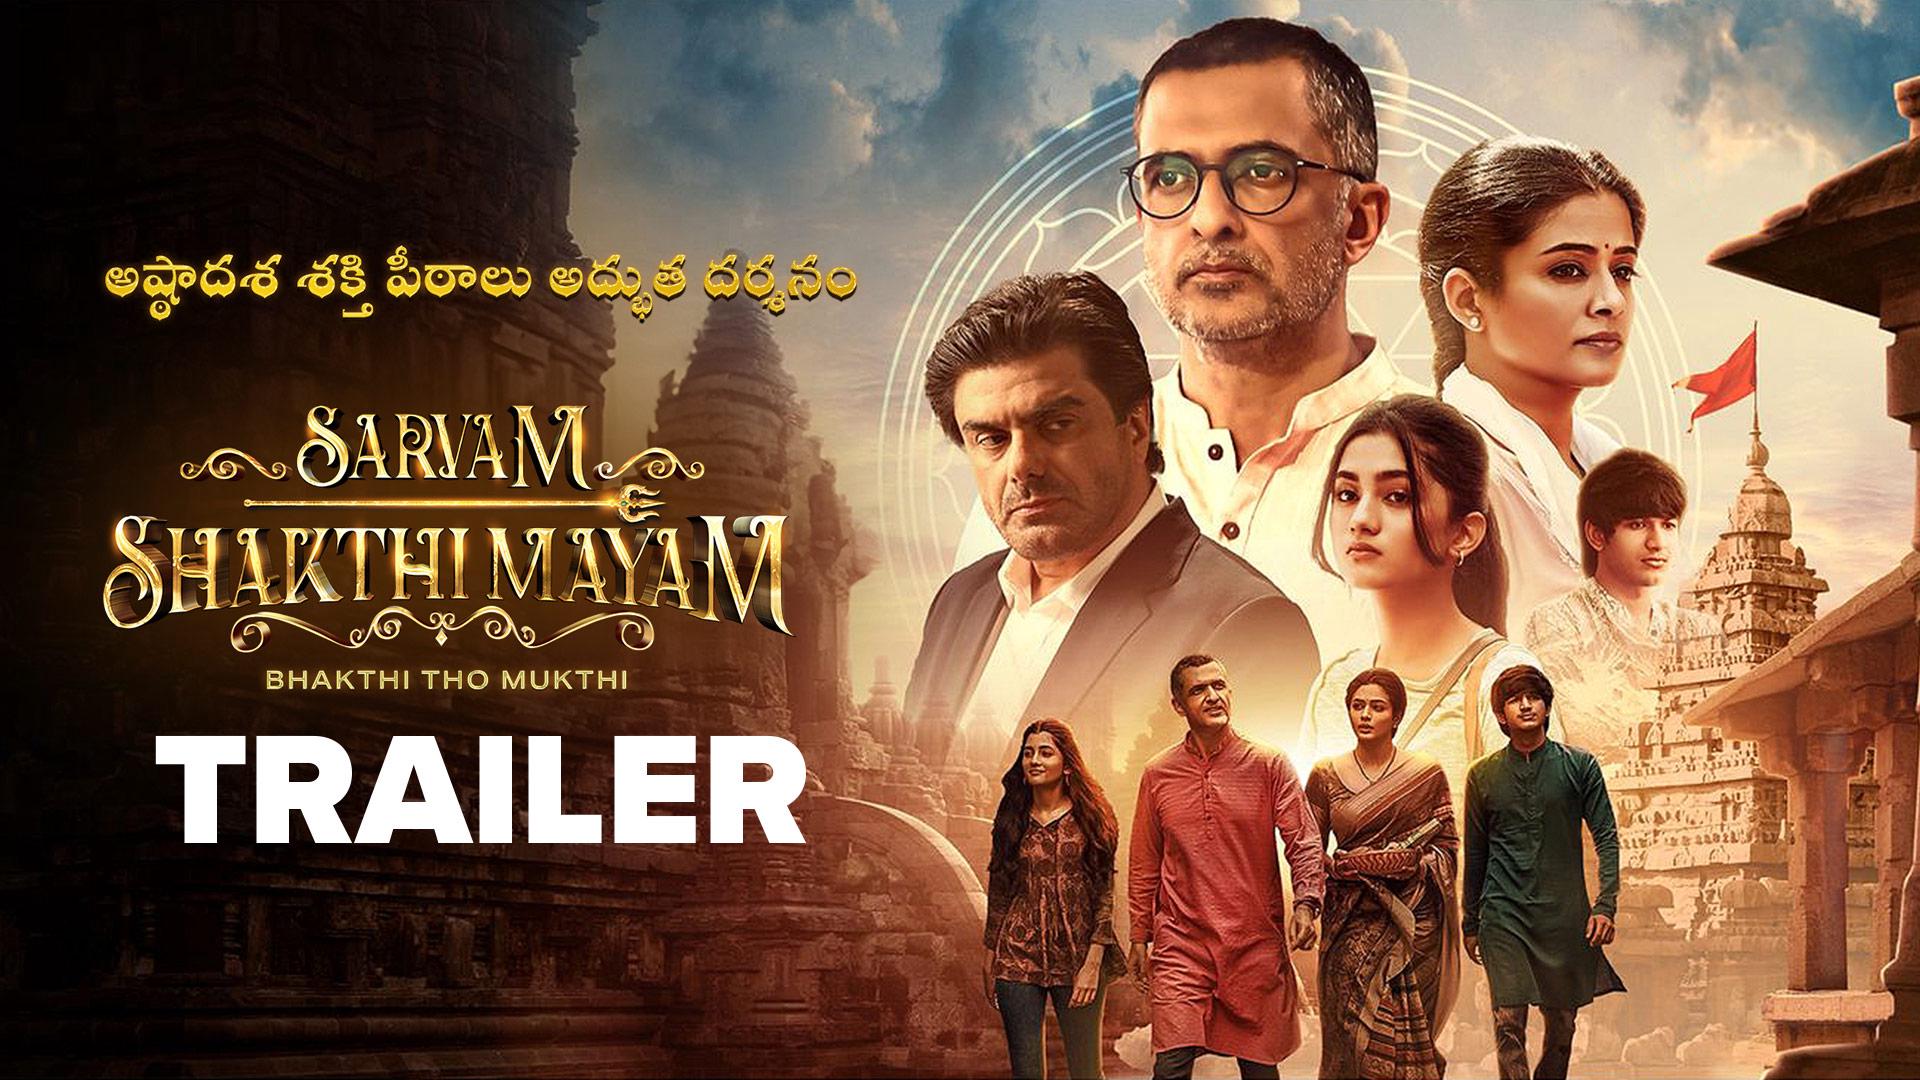 Watch Sarvam Shakthi Mayam Trailer on aha in HD Quality Stream Now.